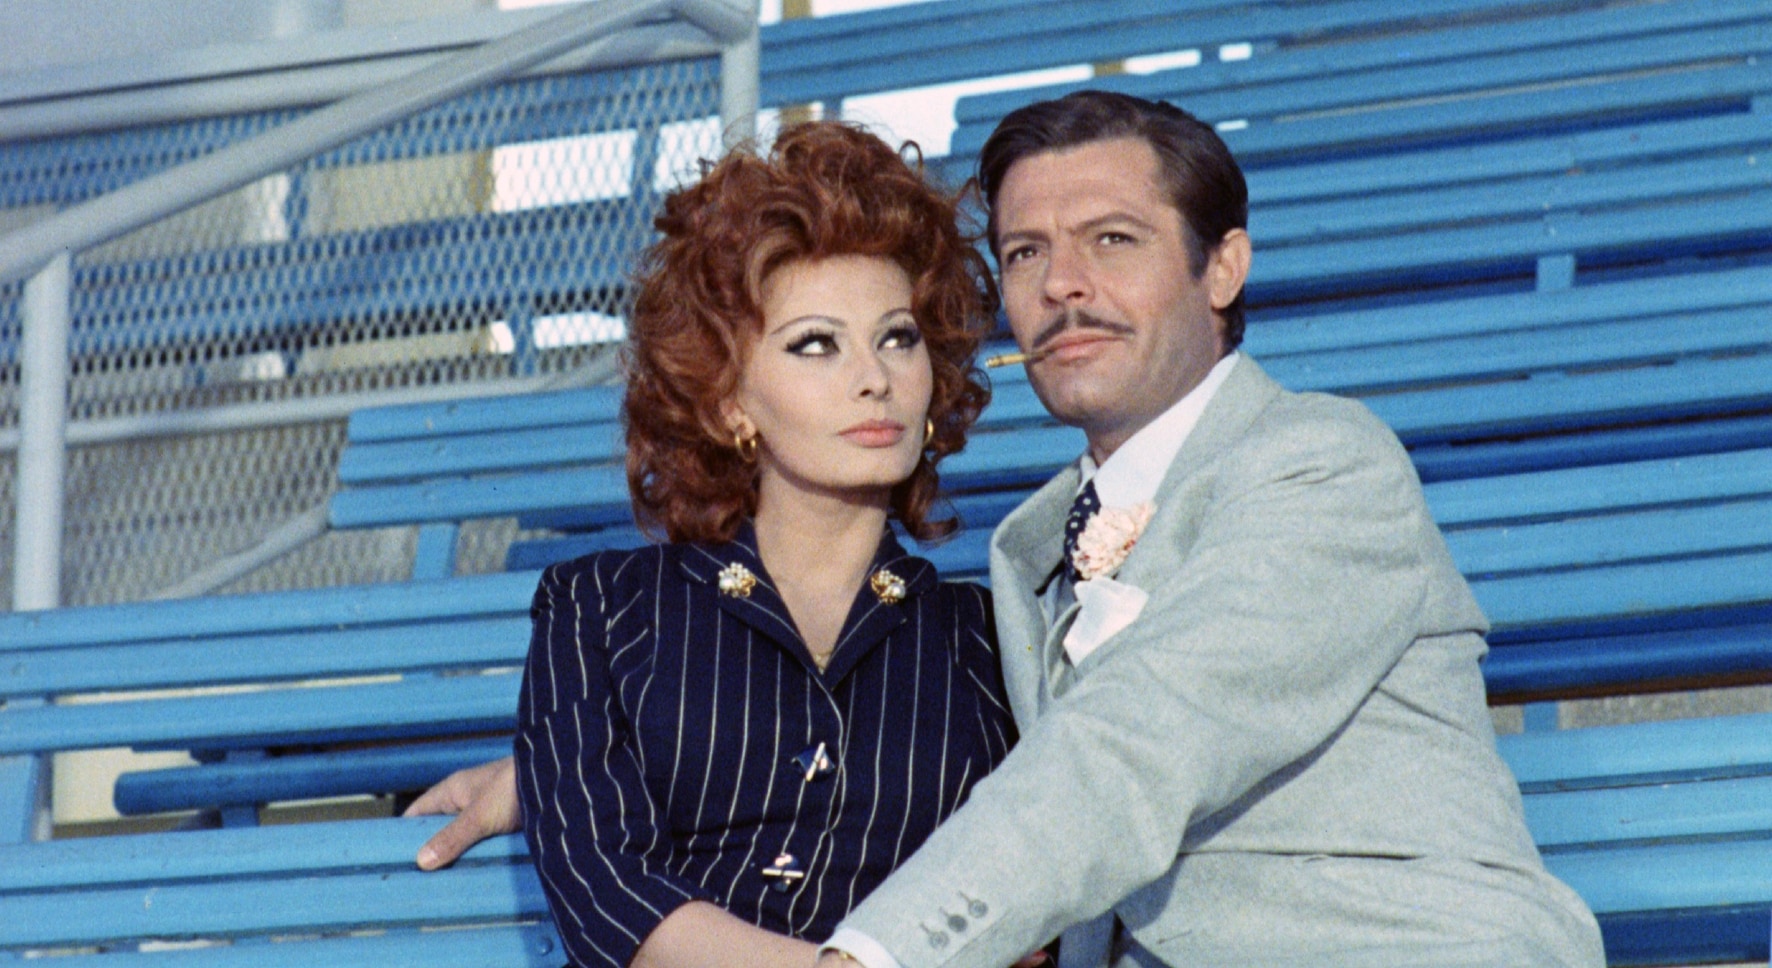 Sofia Loren e Marcello Mastroianni in "Matrimonio all'italiana" di Vittorio De Sica, 1964